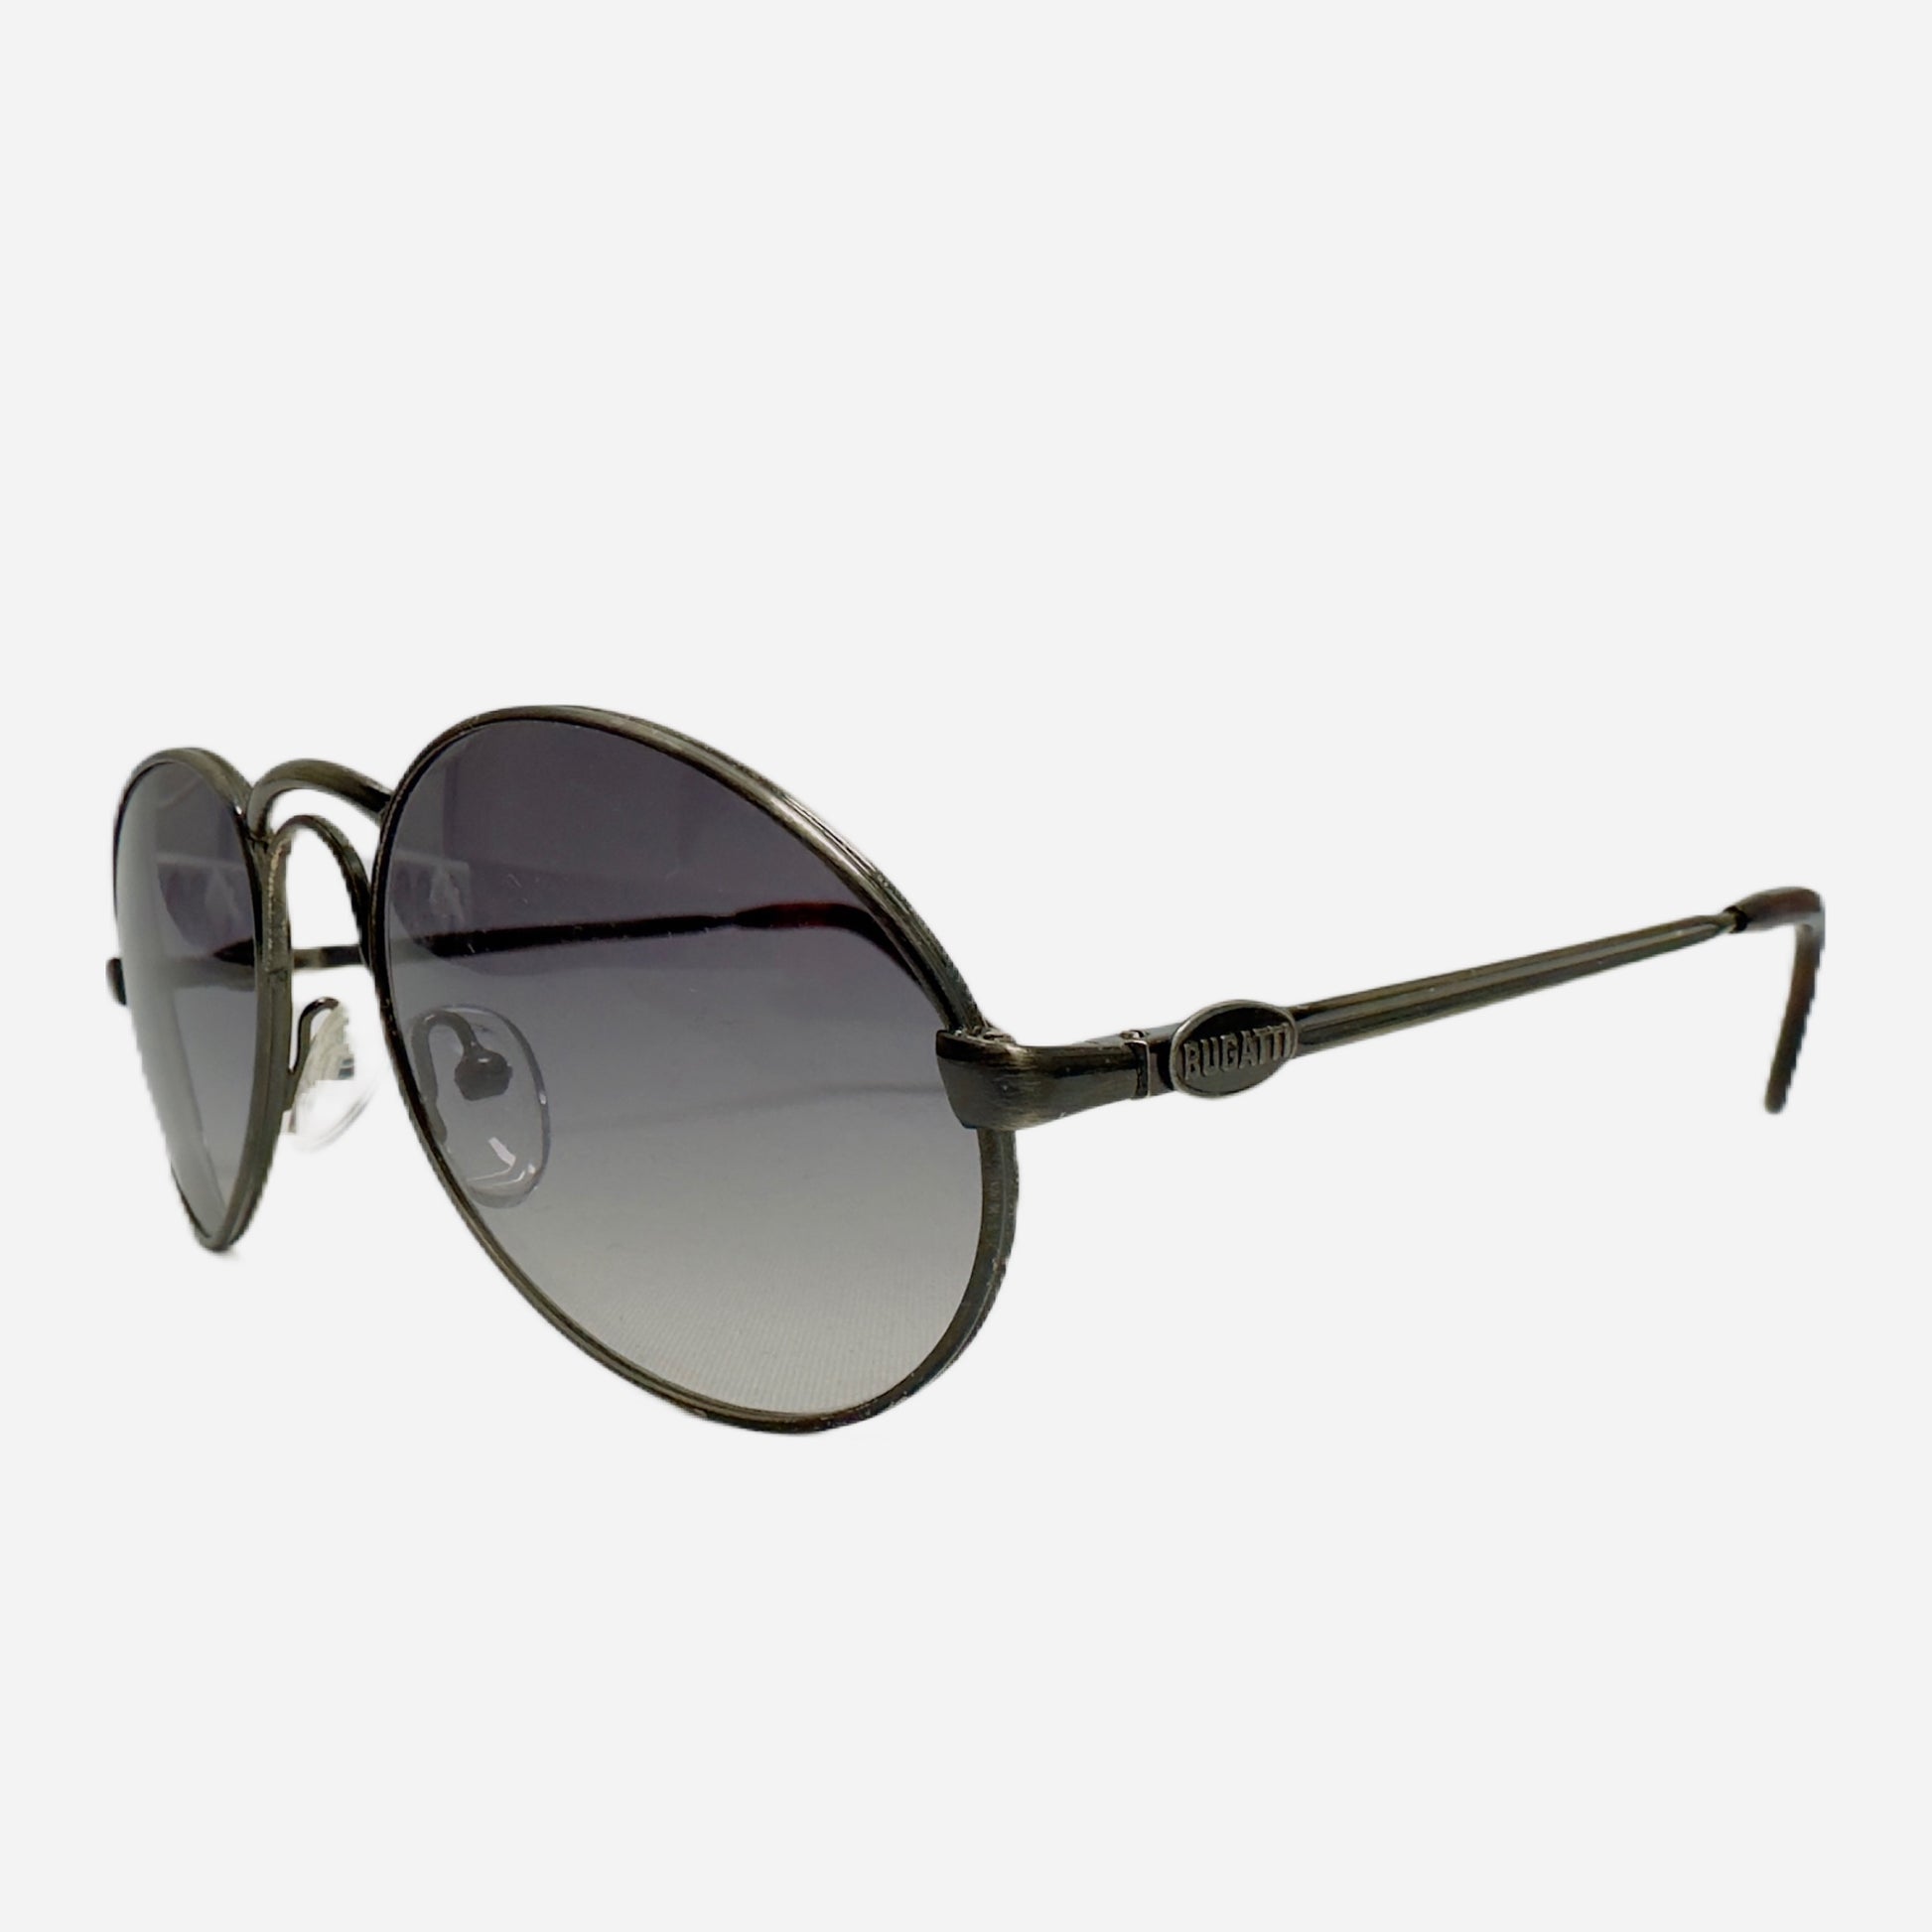 Ettore-Bugatti-Sonnenbrille-Sunglasses-03328-the-seekers-side